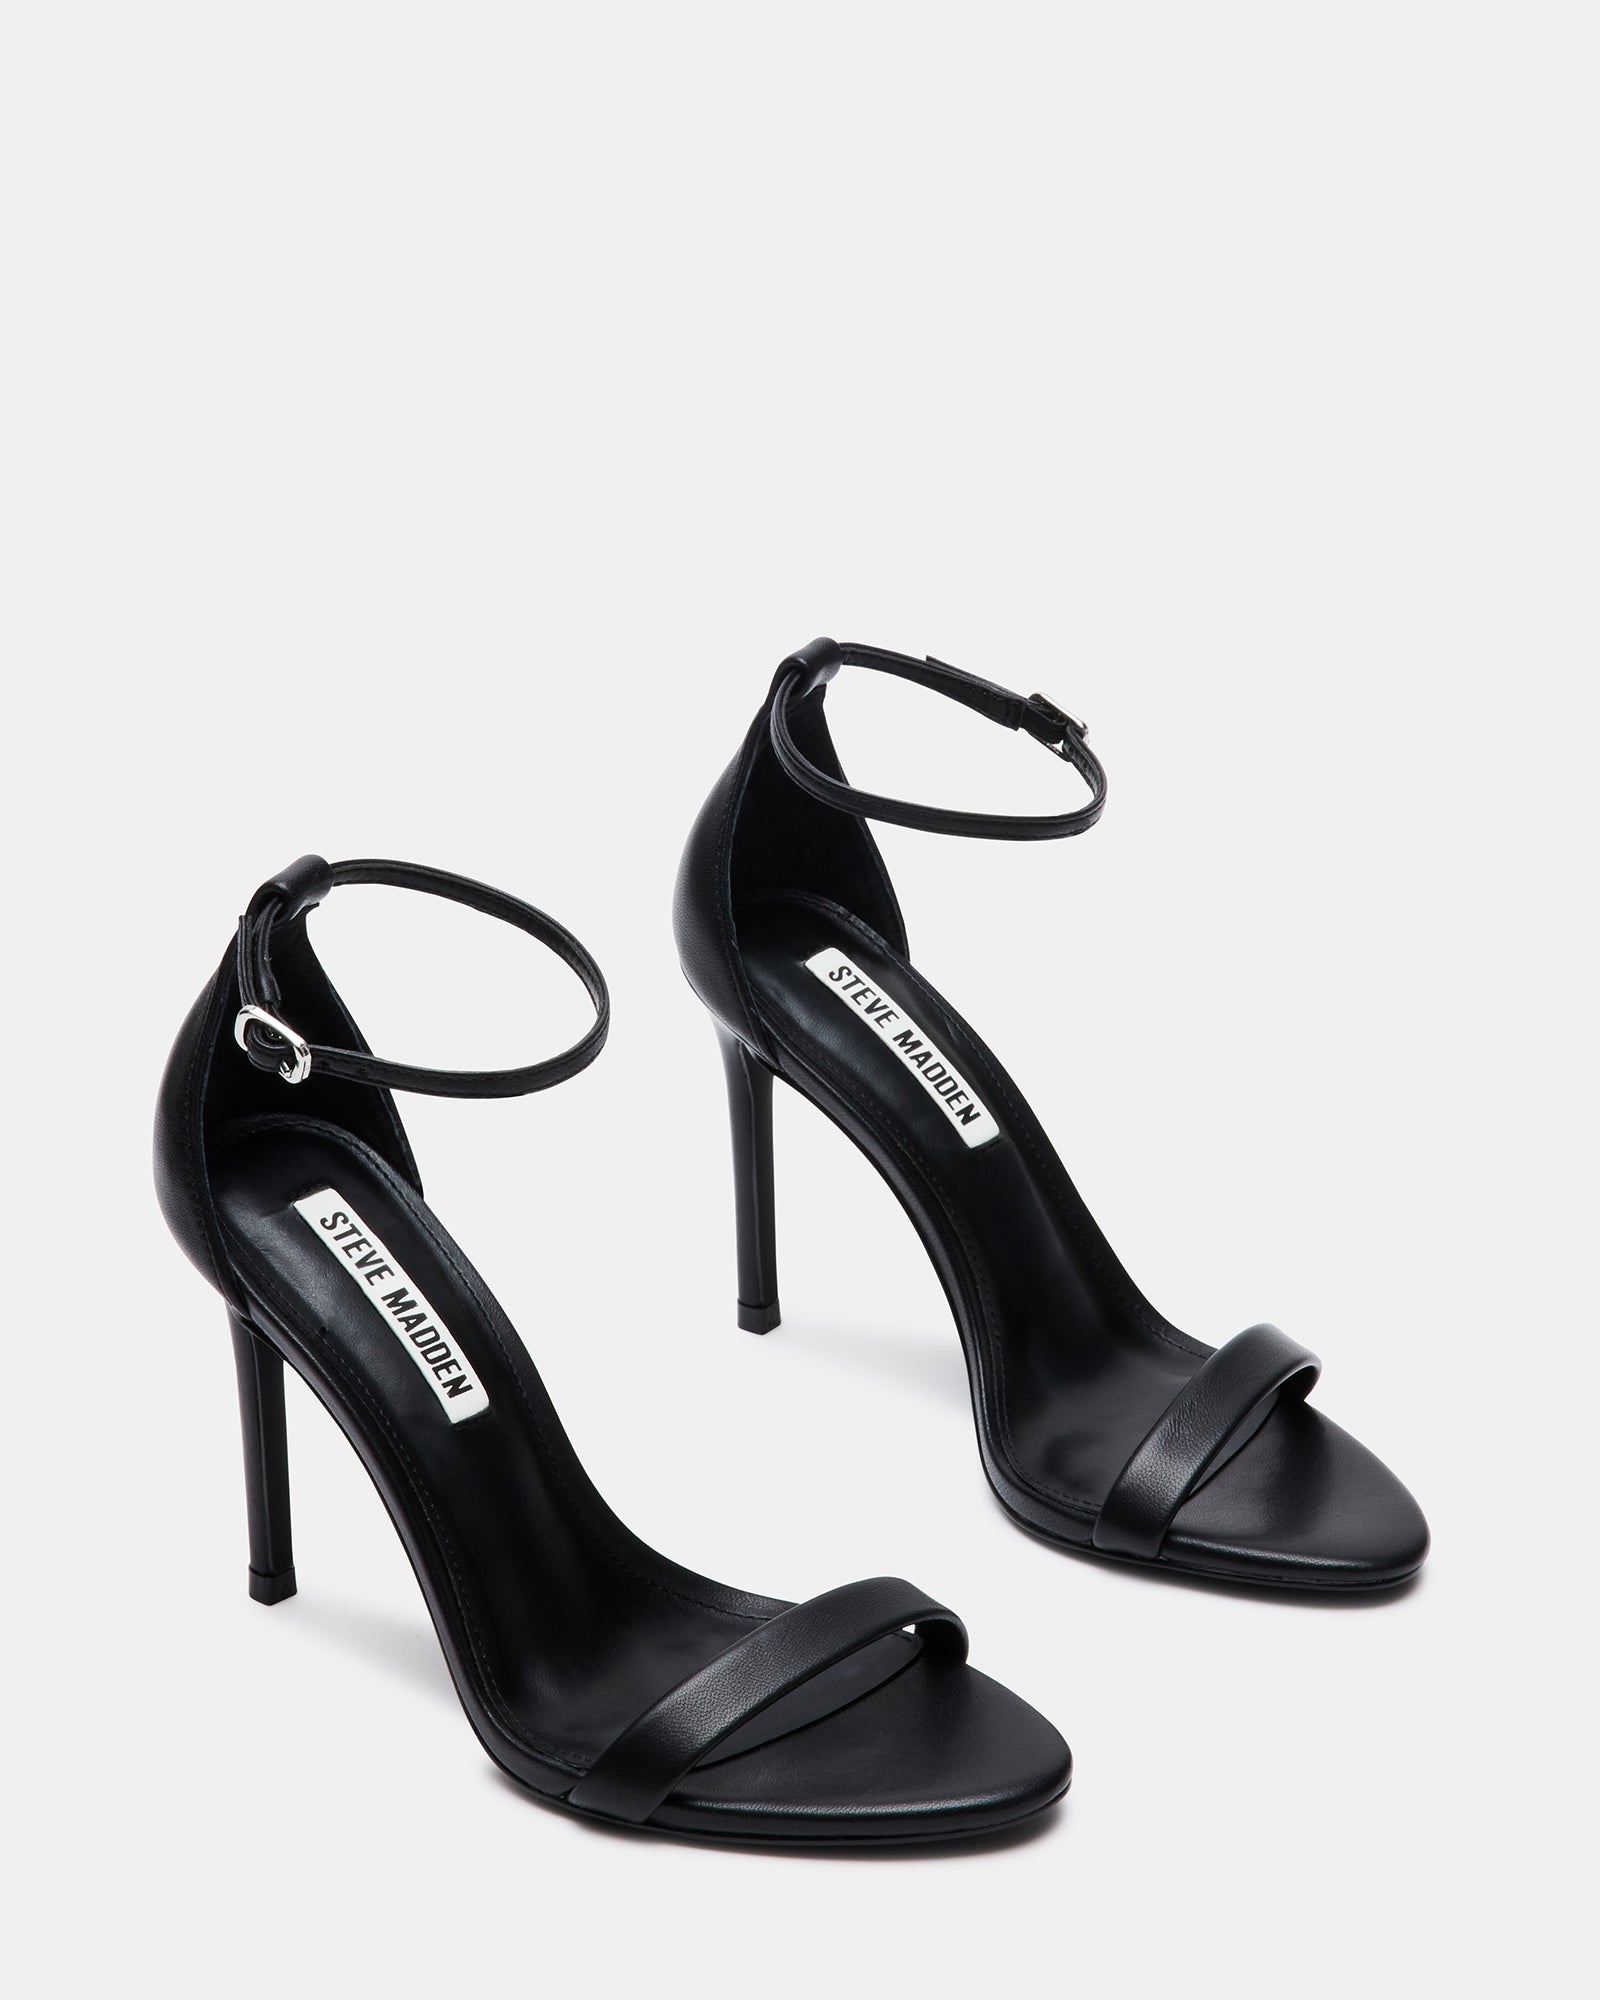 TECY Black Leather Ankle Strap Heel | Women's Heels – Steve Madden